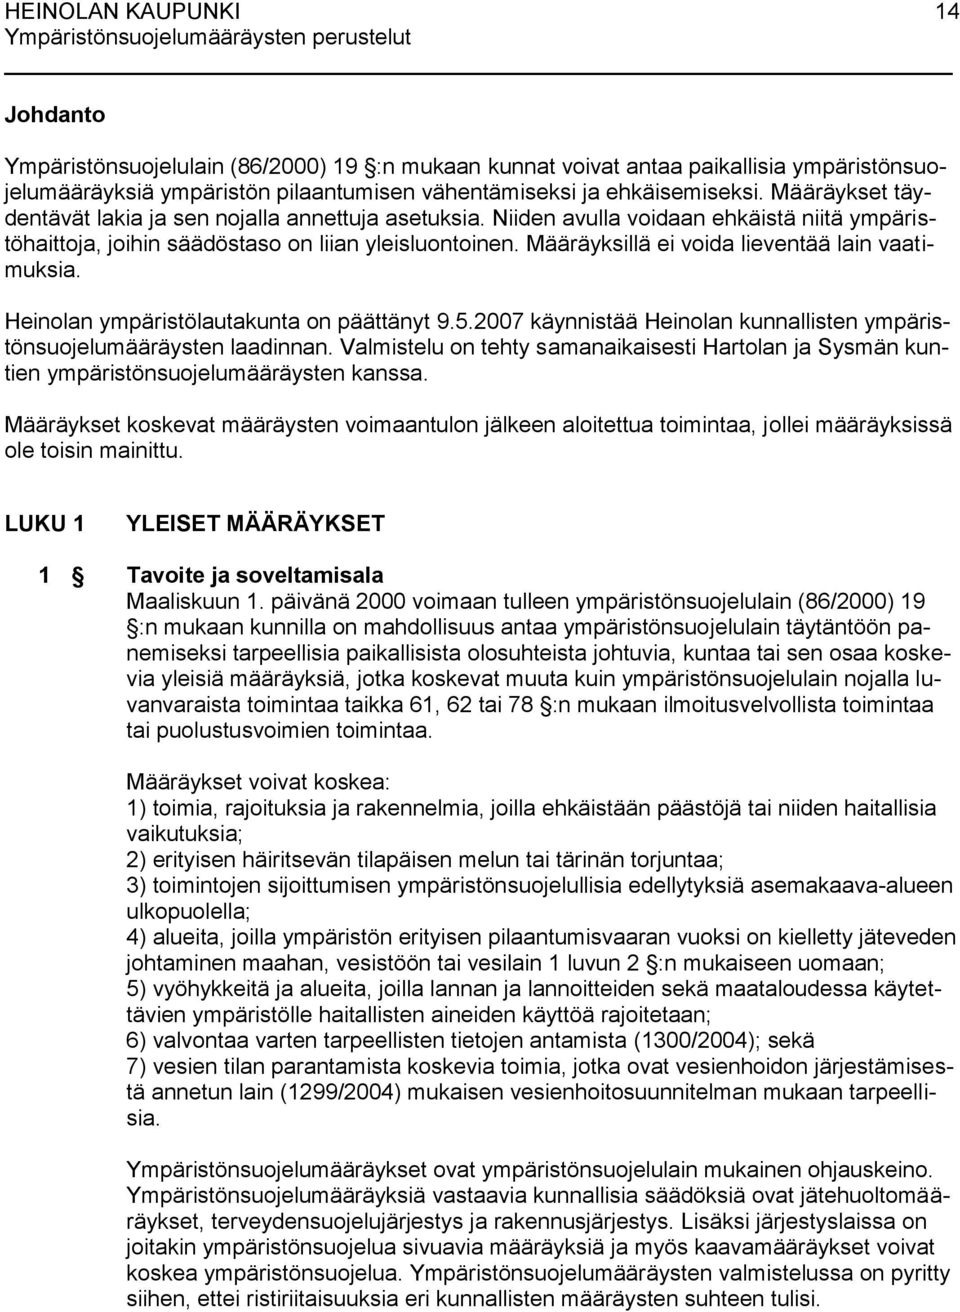 Määräyksillä ei voida lieventää lain vaatimuksia. Heinolan ympäristölautakunta on päättänyt 9.5.2007 käynnistää Heinolan kunnallisten ympäristönsuojelumääräysten laadinnan.